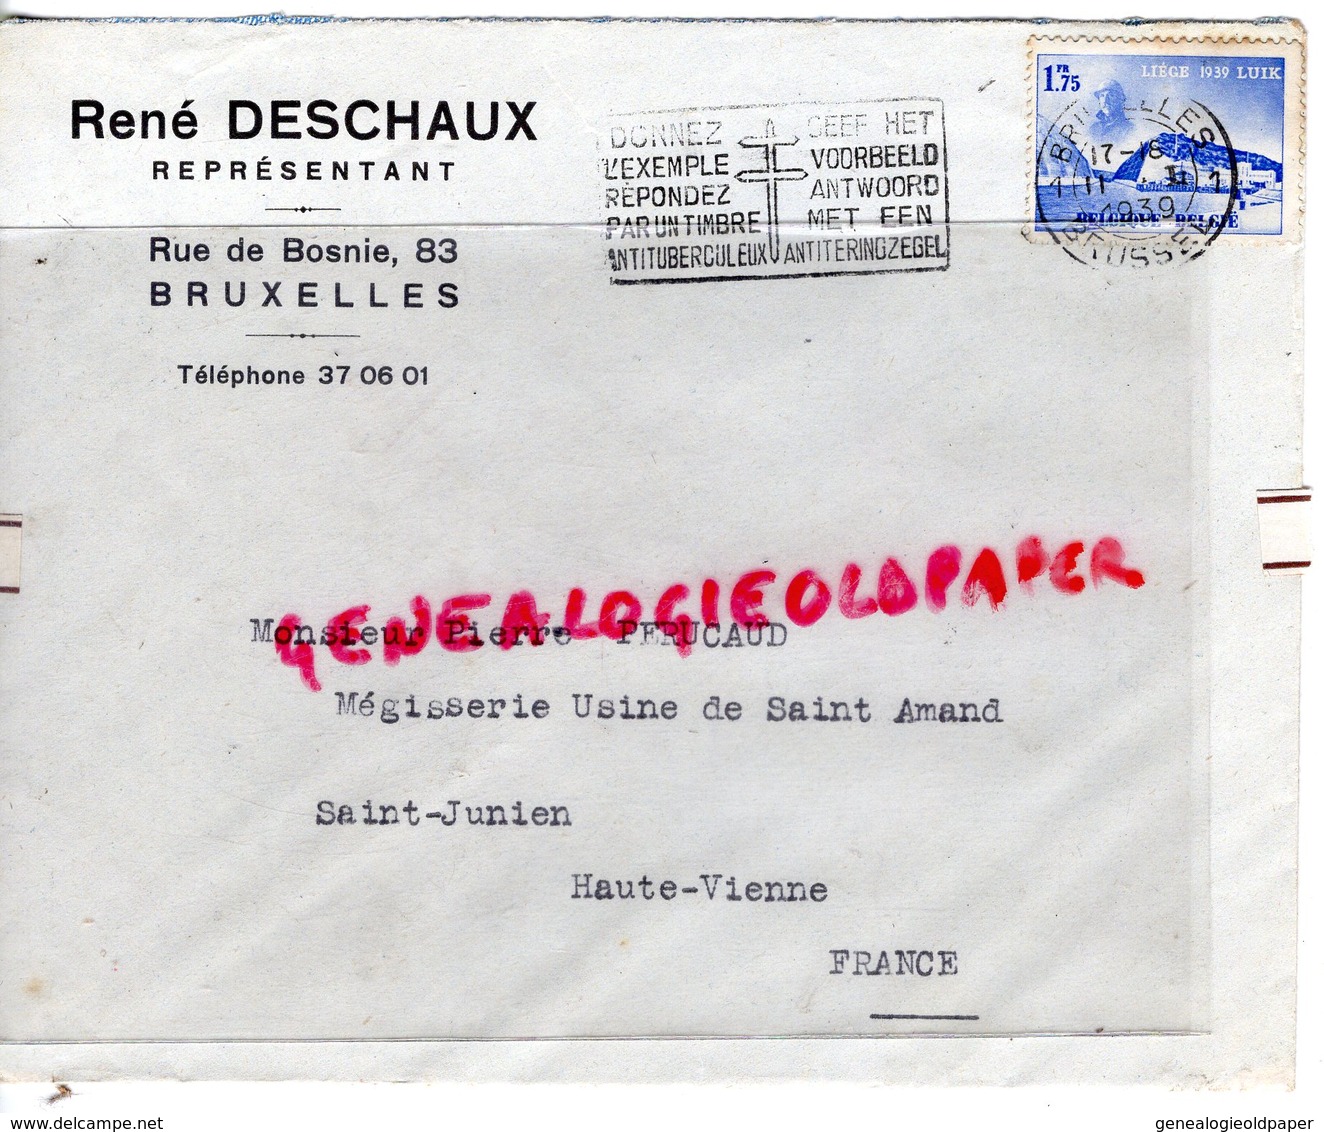 BELGIQUE-BRUXELLES- ENVELOPPE RENE DESCHAUX-REPRESENTANT 83 RUE DE BOSNIE-PIERRE PERUCAUD MEGISSERIE SAINT JUNIEN-1939 - Old Professions